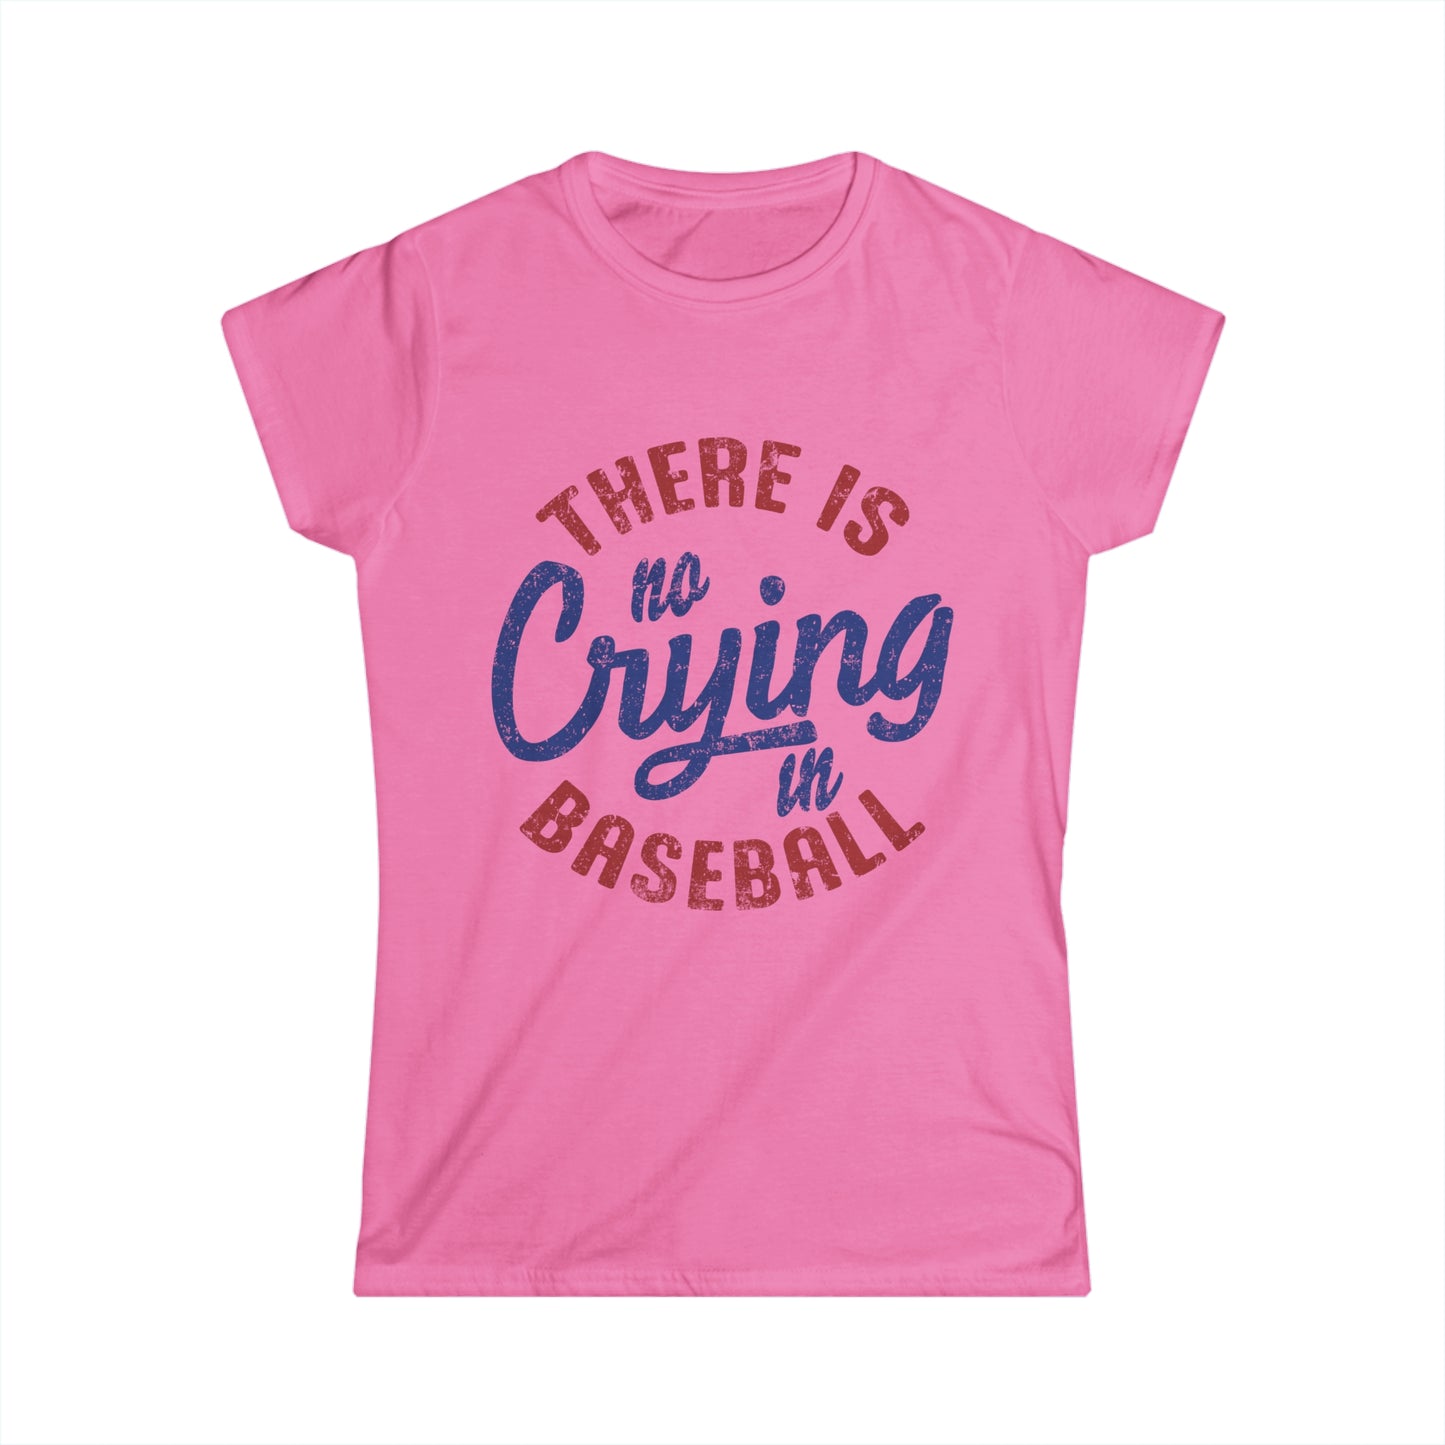 No Crying In Baseball T-shirt